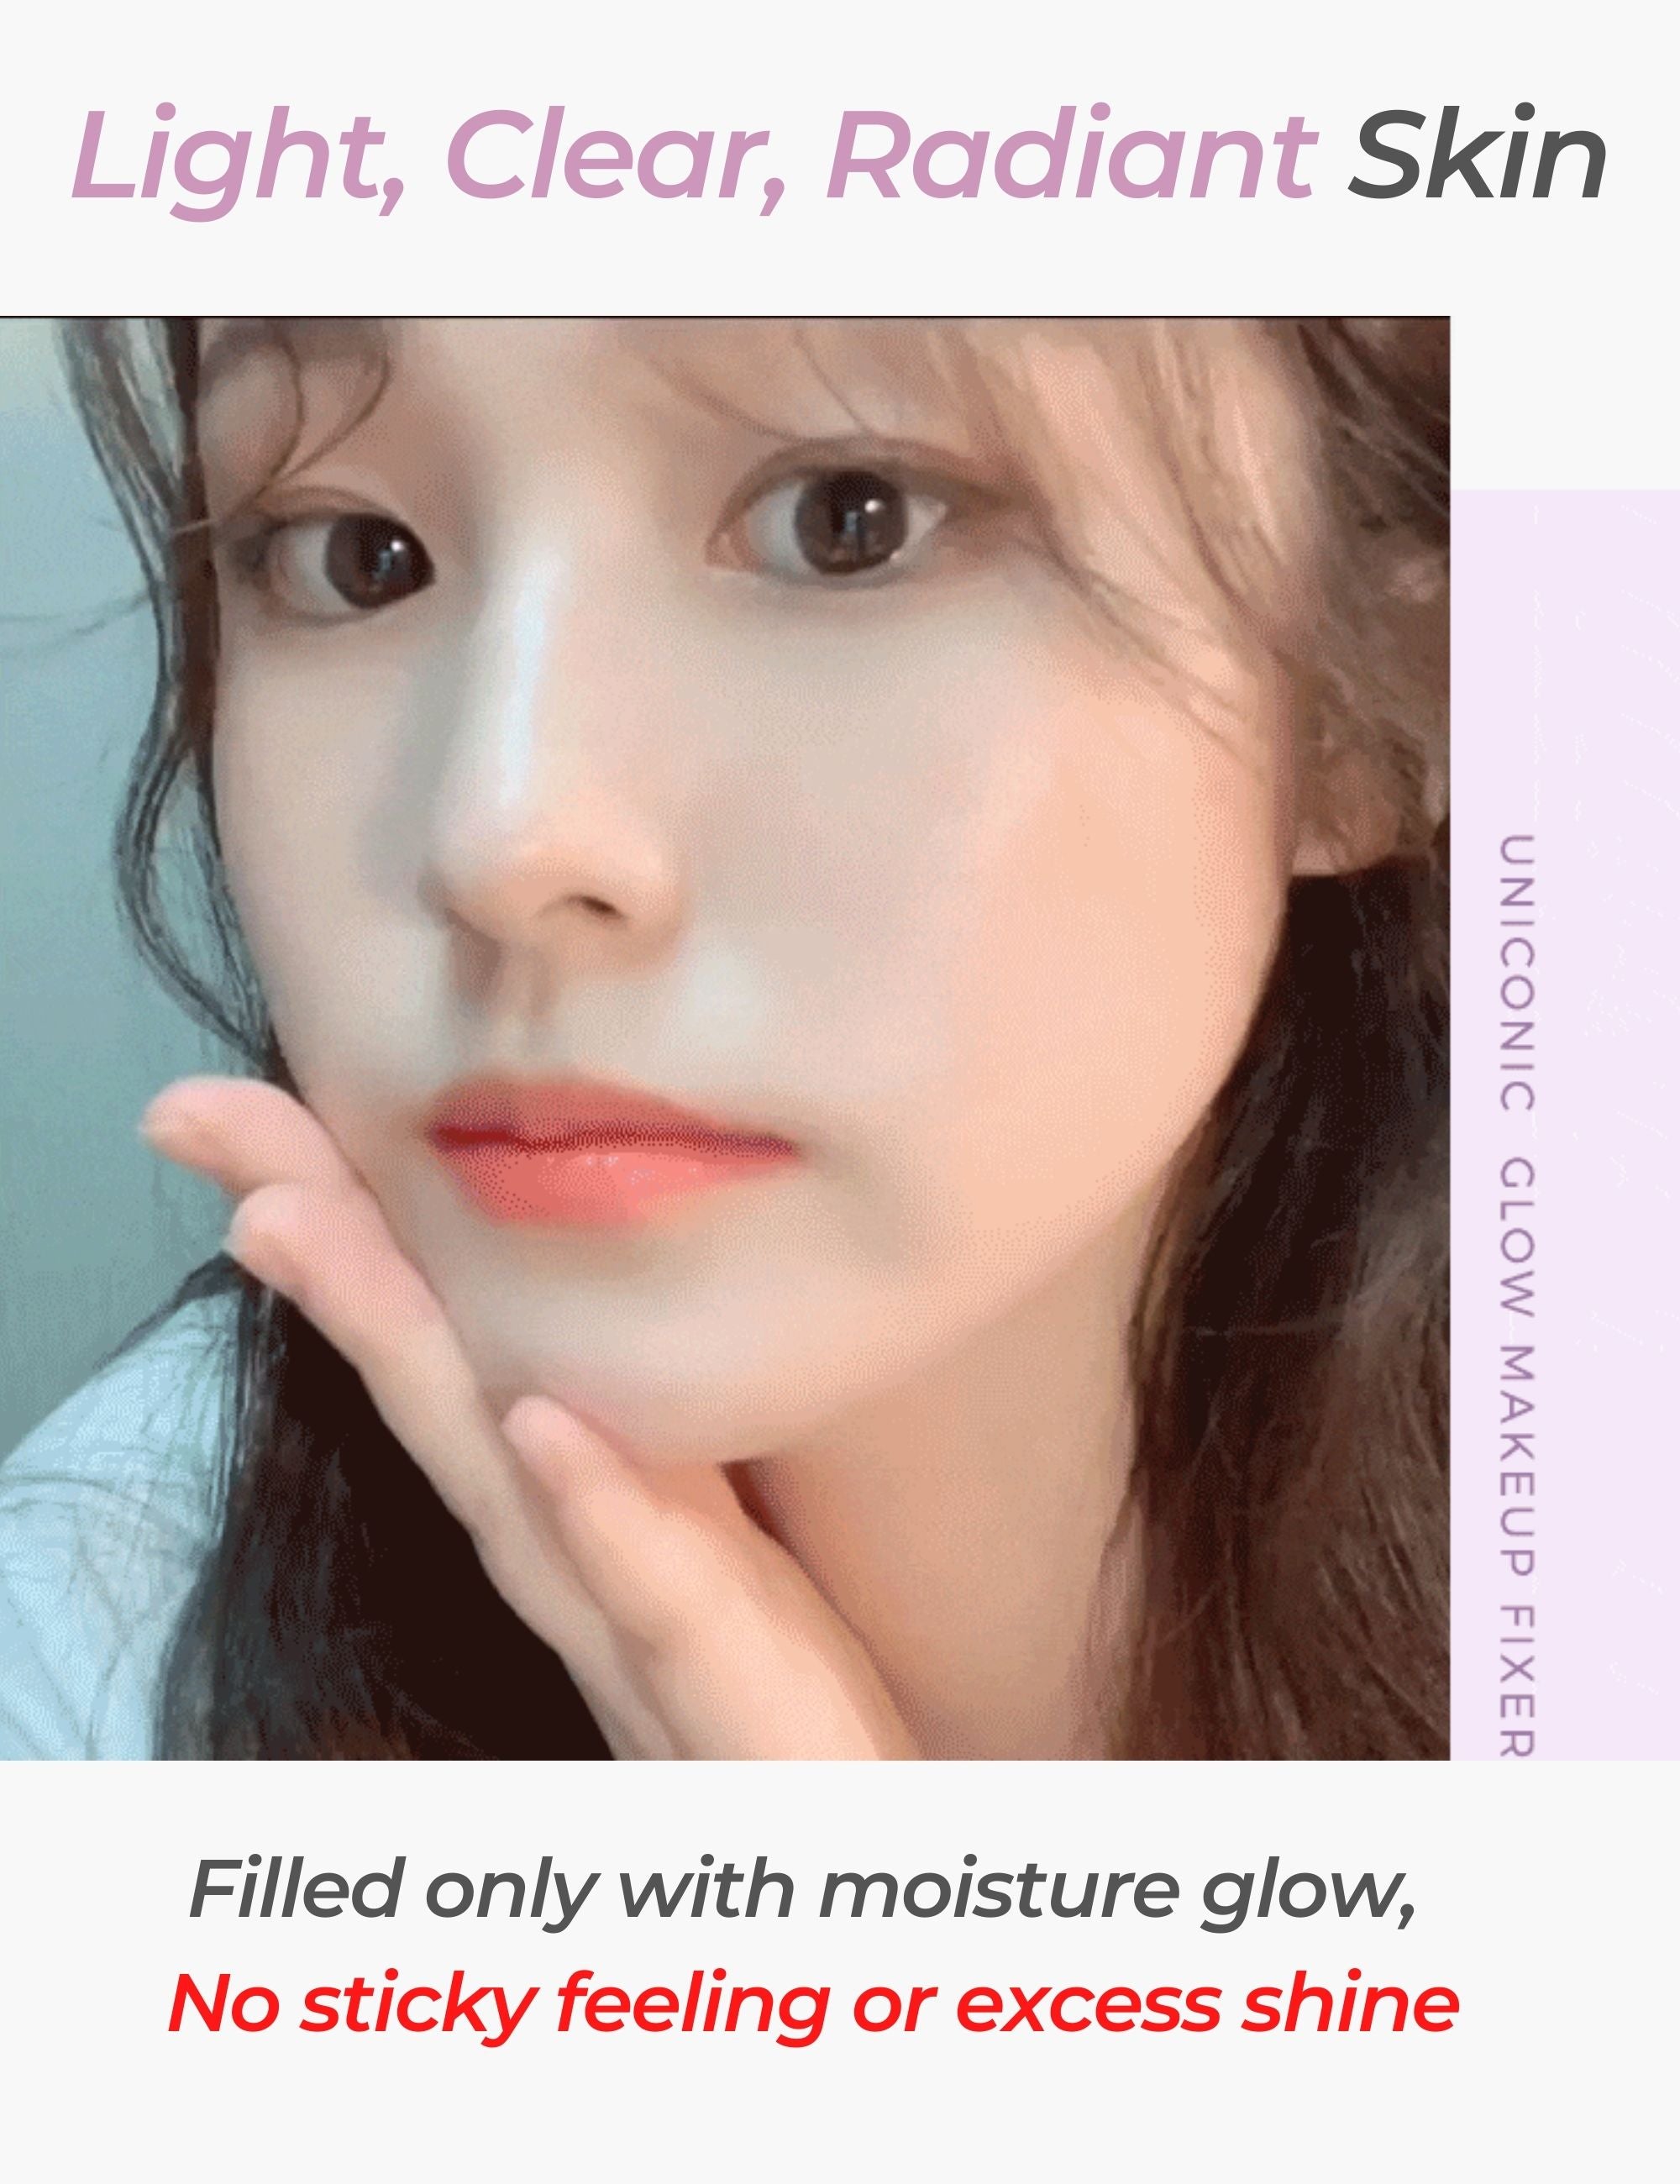 Glow Makeup